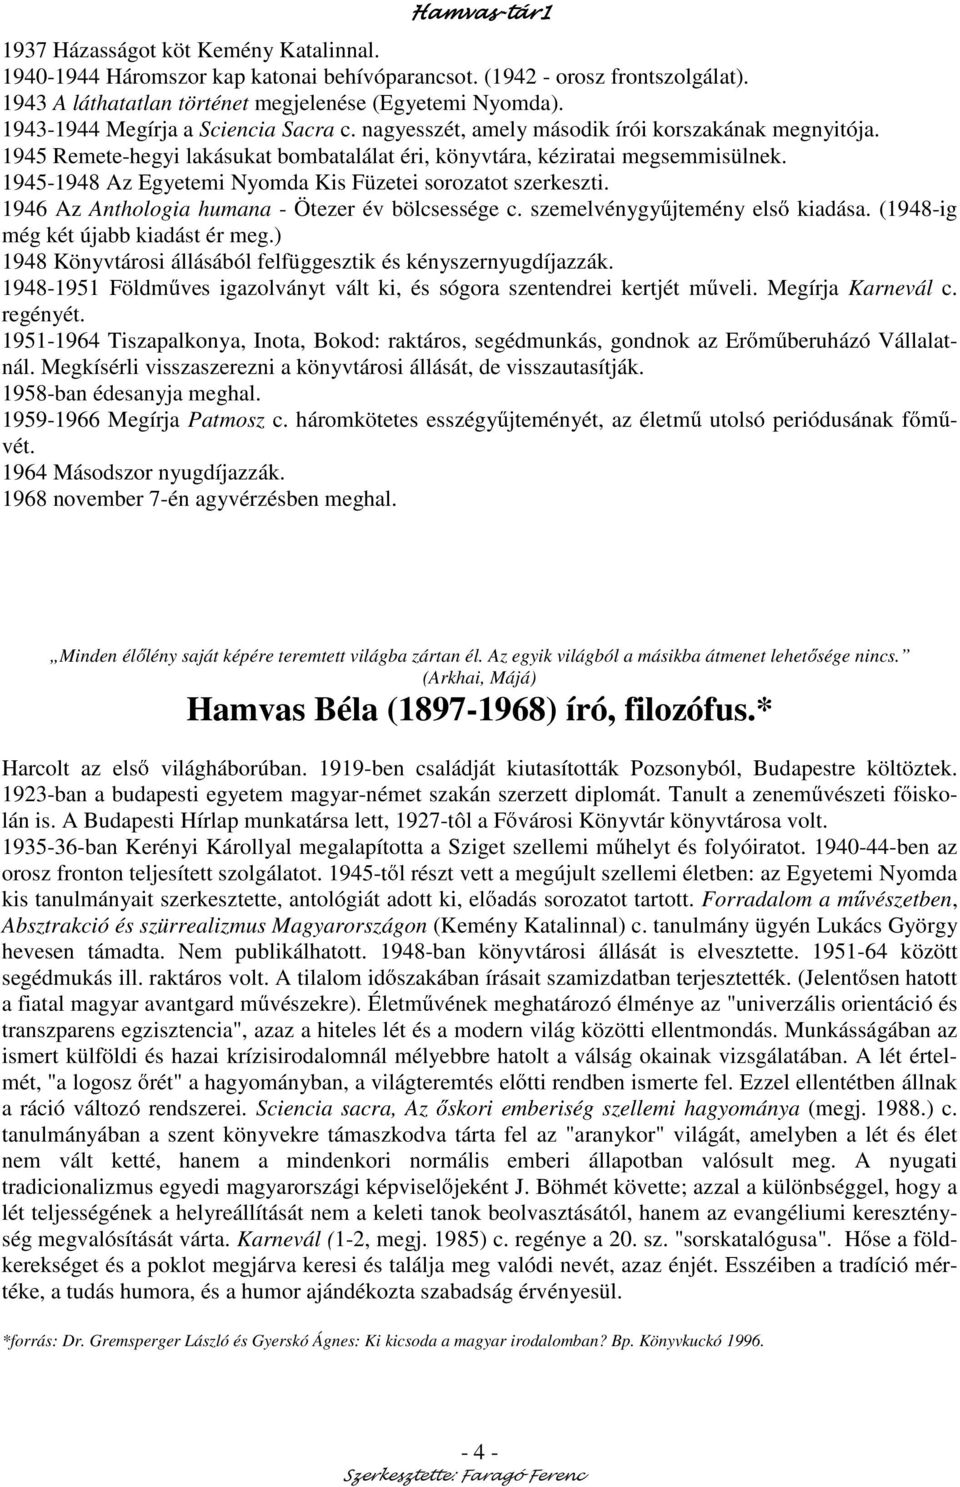 1945-1948 Az Egyetemi Nyomda Kis Füzetei sorozatot szerkeszti. 1946 Az Anthologia humana - Ötezer év bölcsessége c. szemelvénygy jtemény els kiadása. (1948-ig még két újabb kiadást ér meg.